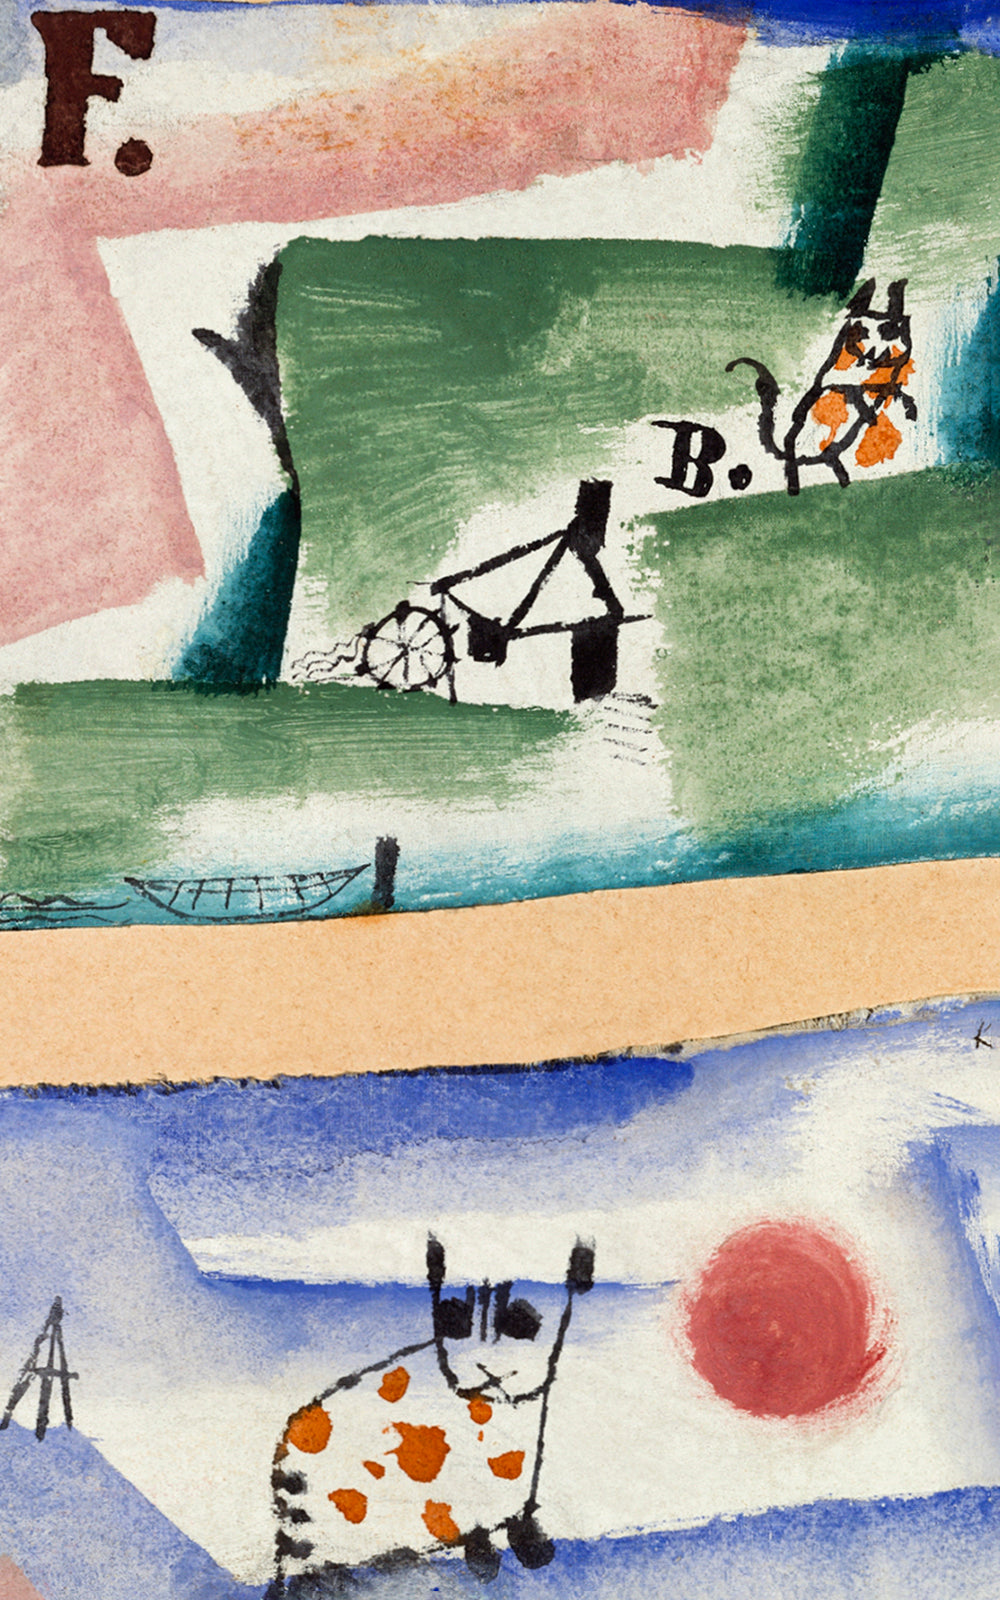 Tomcat's Turf by Paul Klee